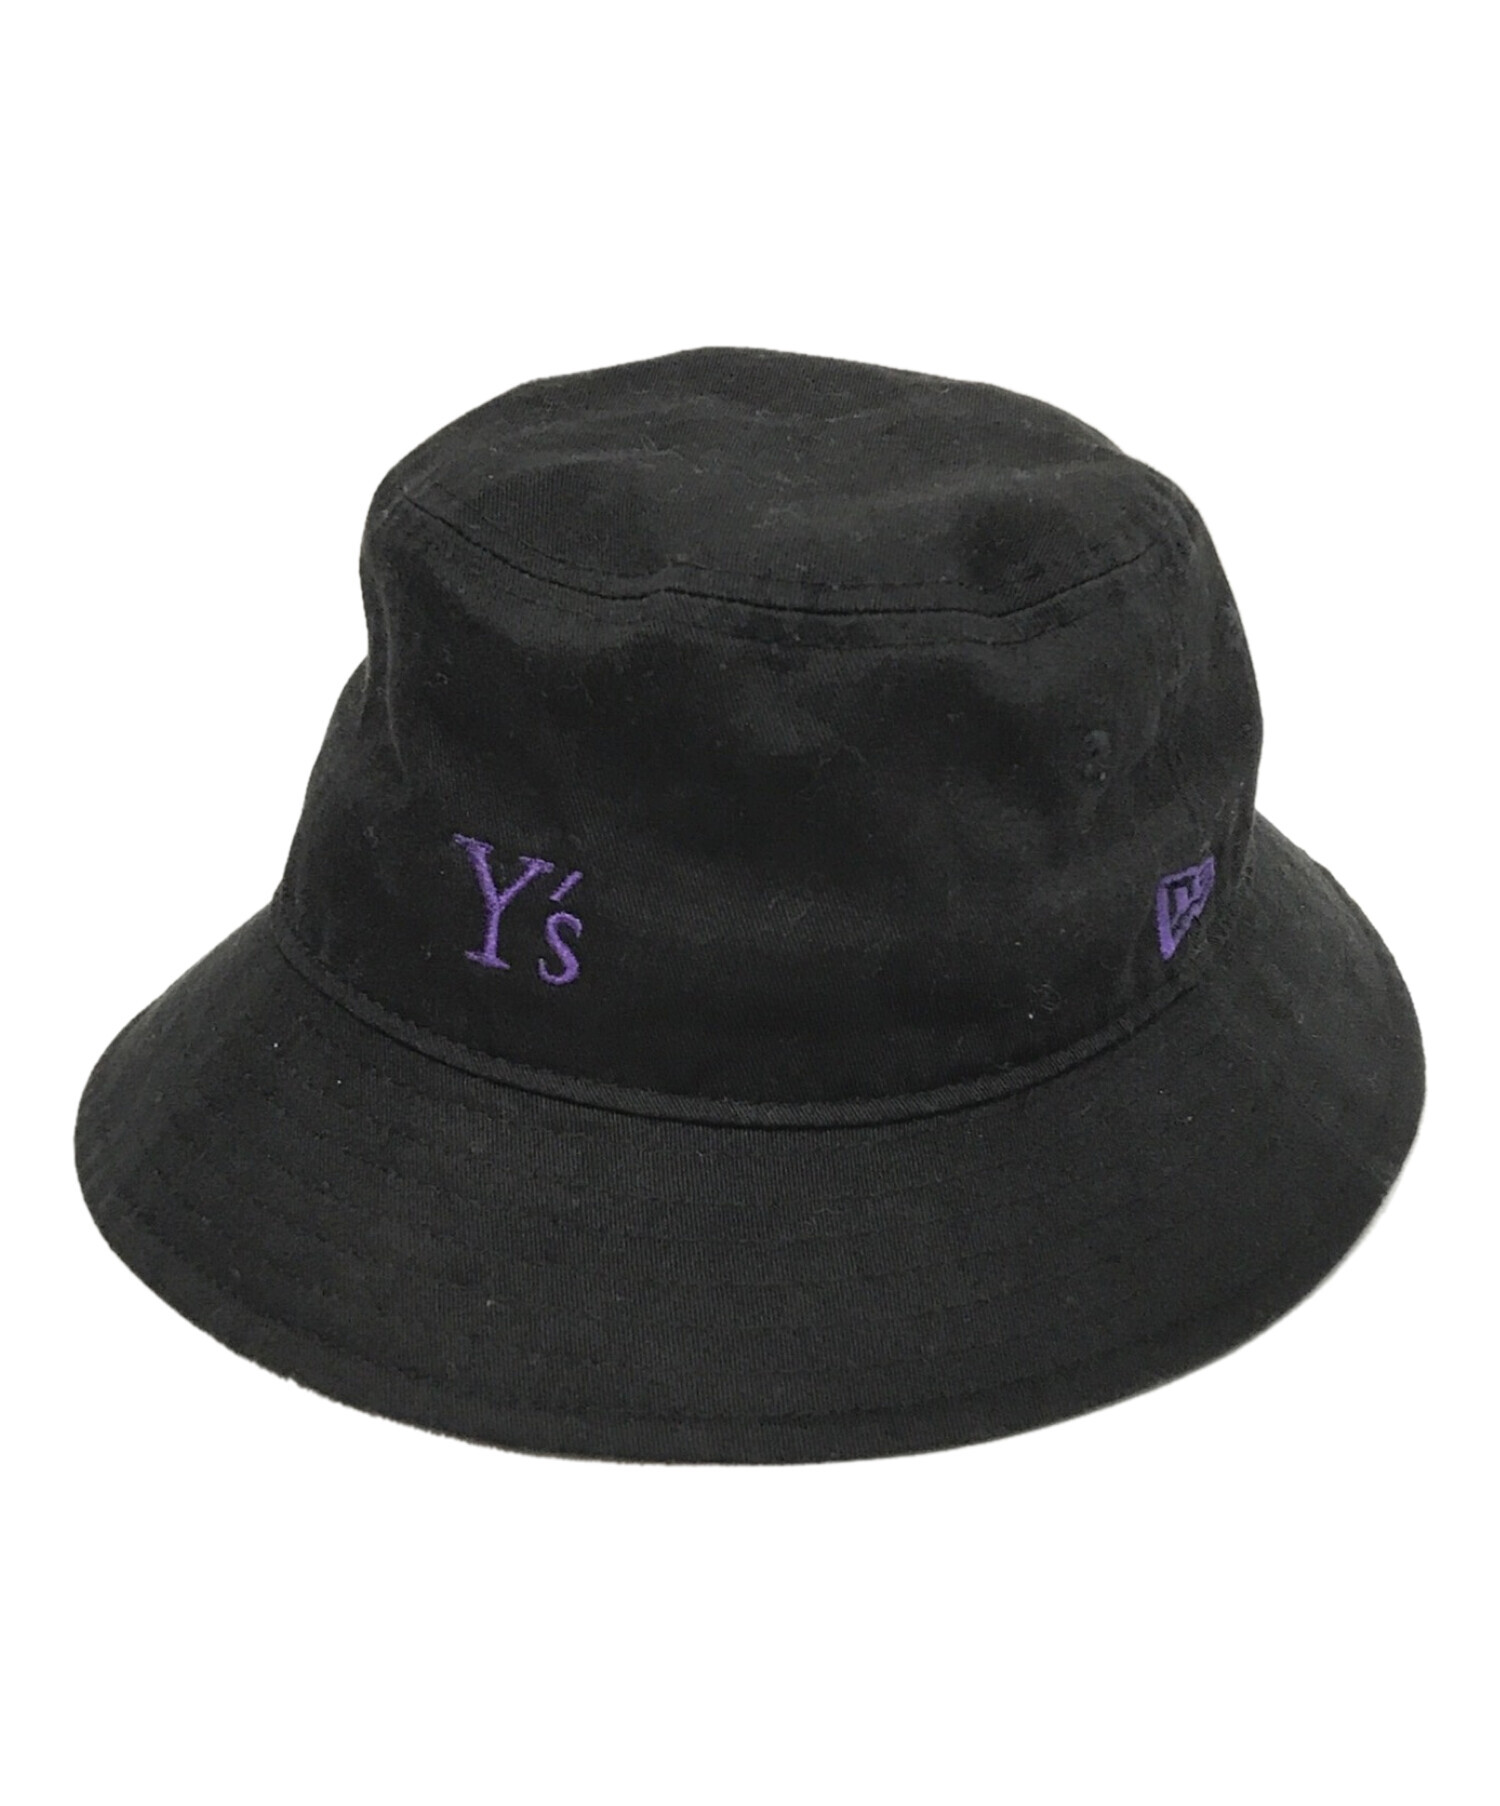 Y's ハット 帽子 - ハット